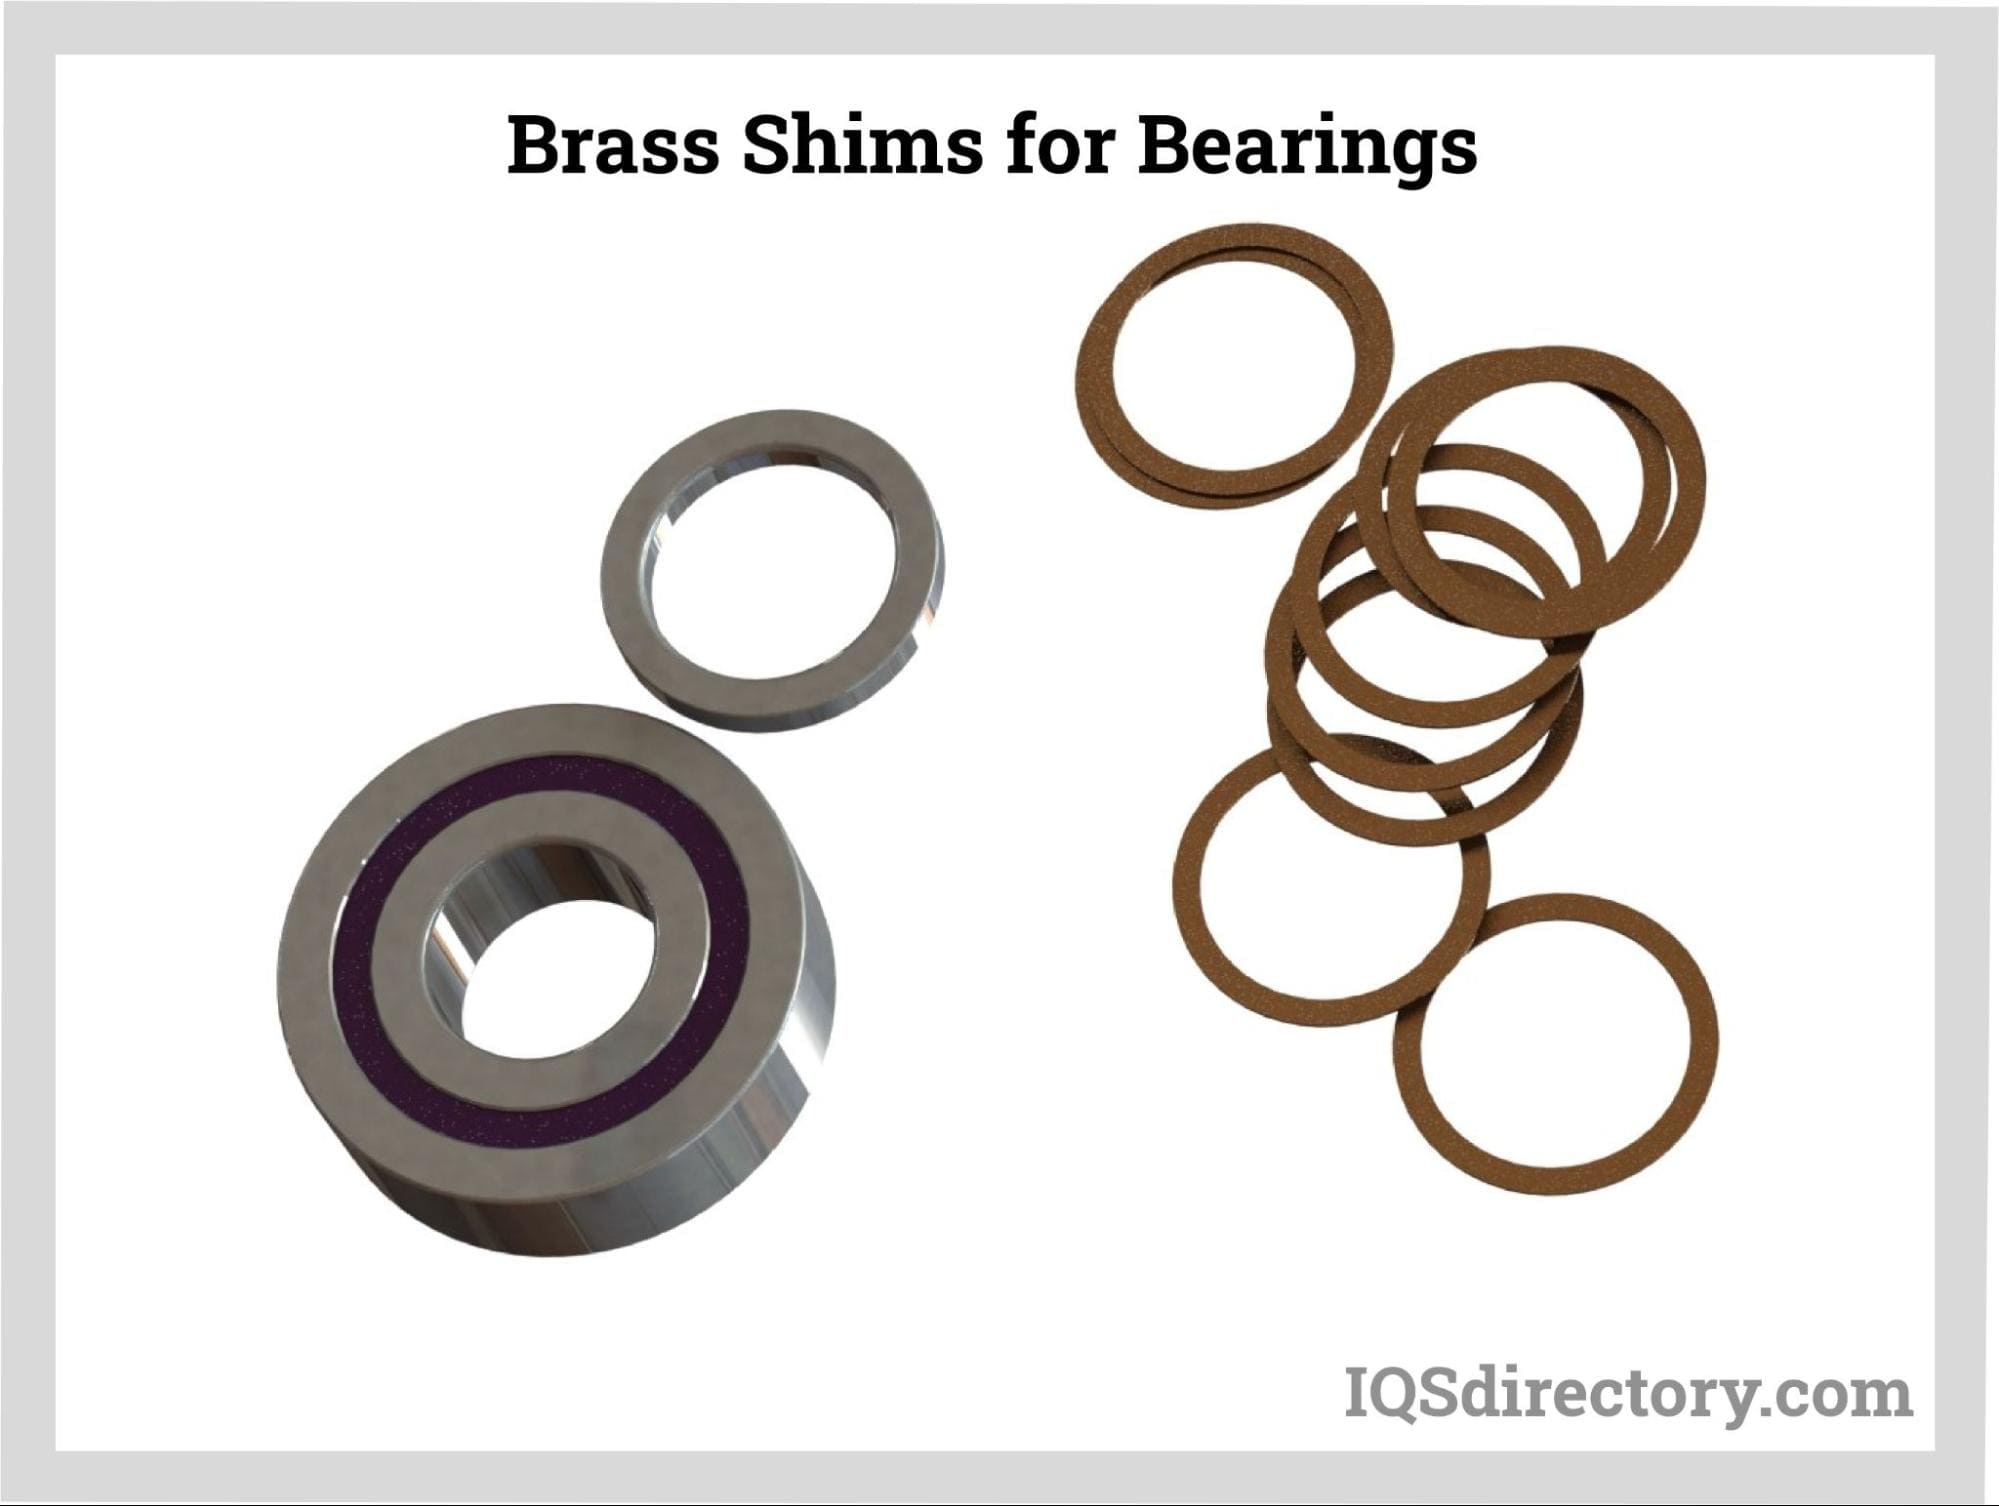 Brass Shims for Bearings